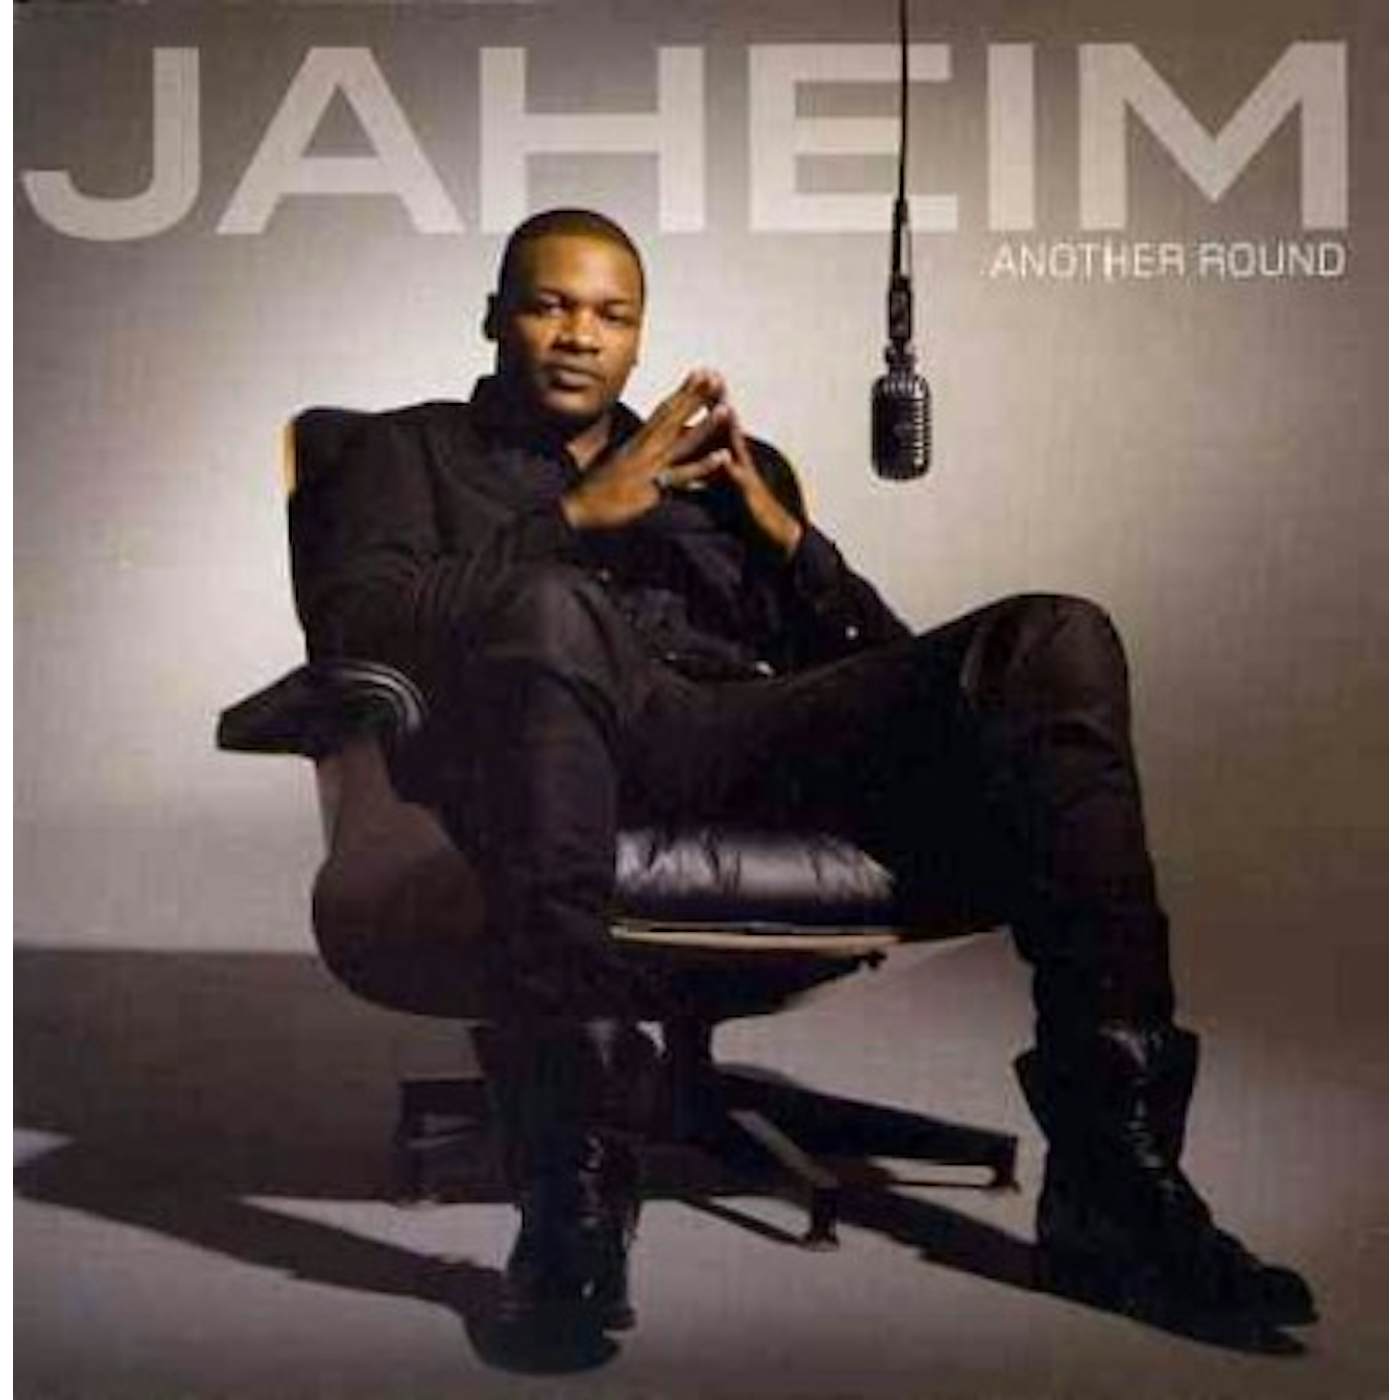 Jaheim Another Round CD